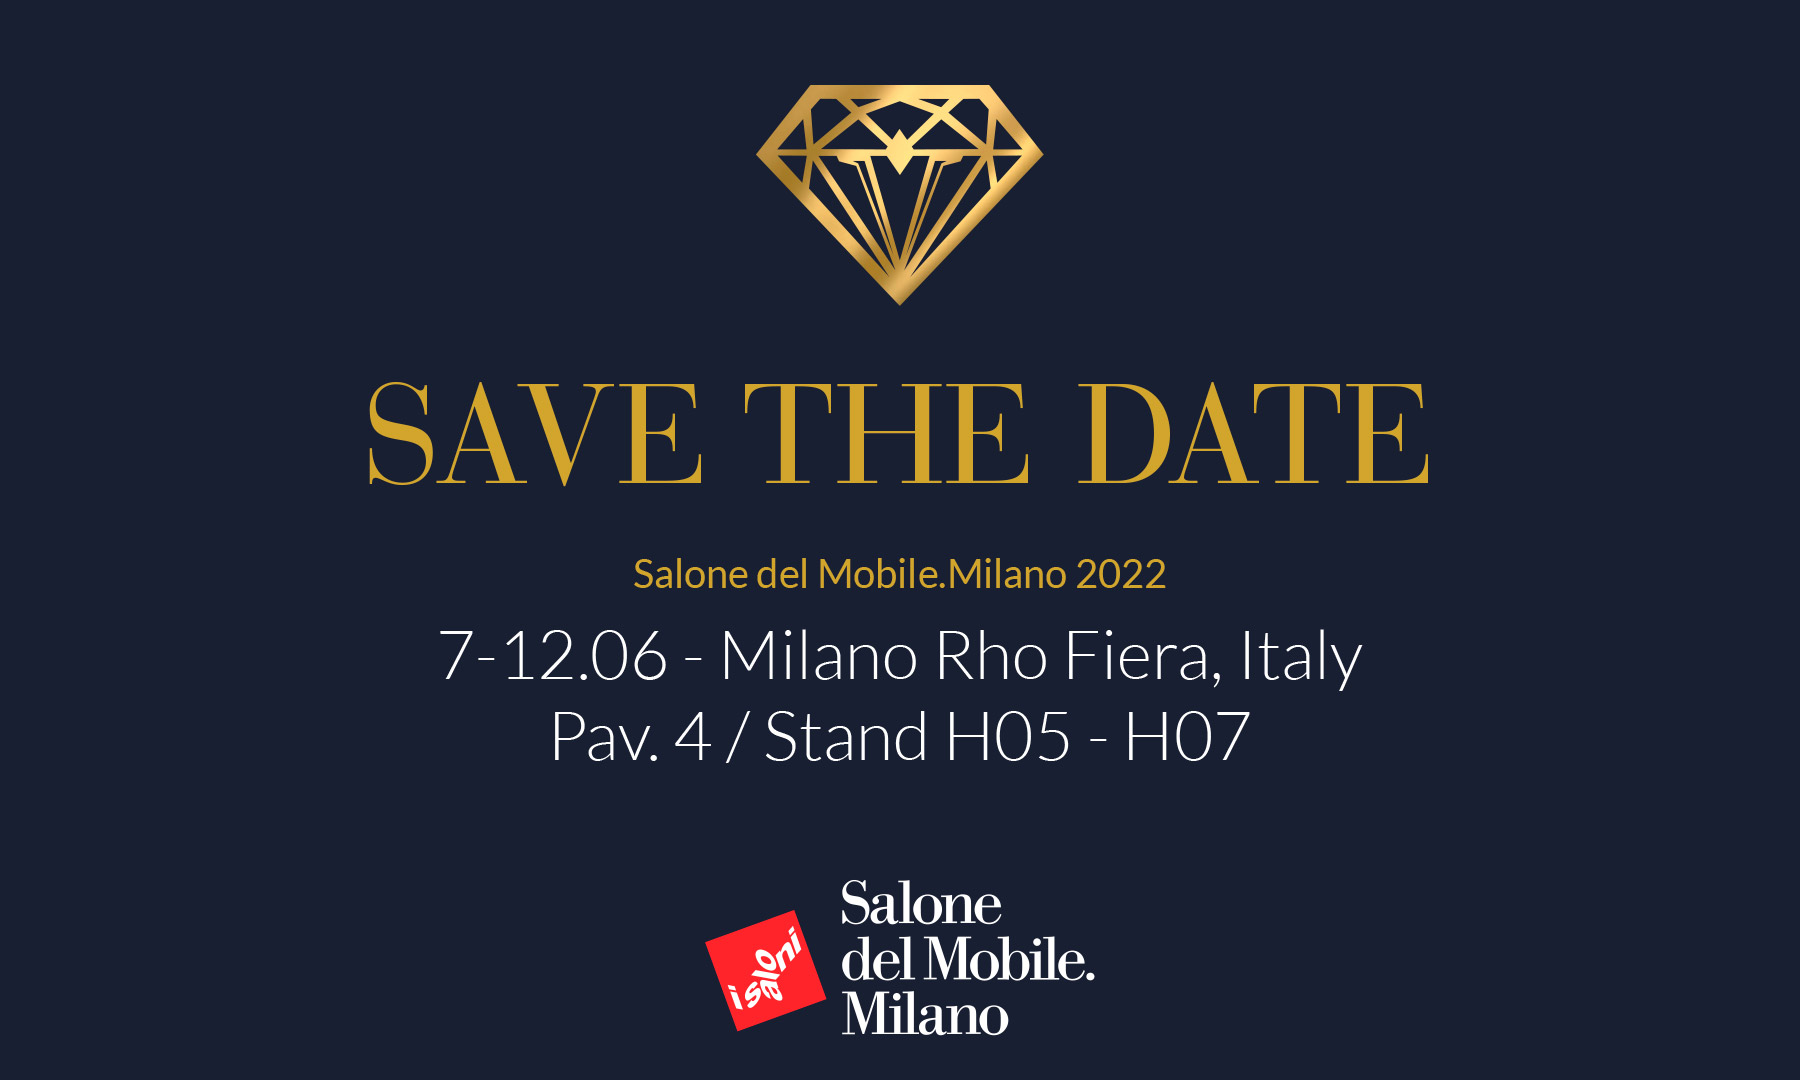 Save the Date - Salone del Mobile.Milano 2022